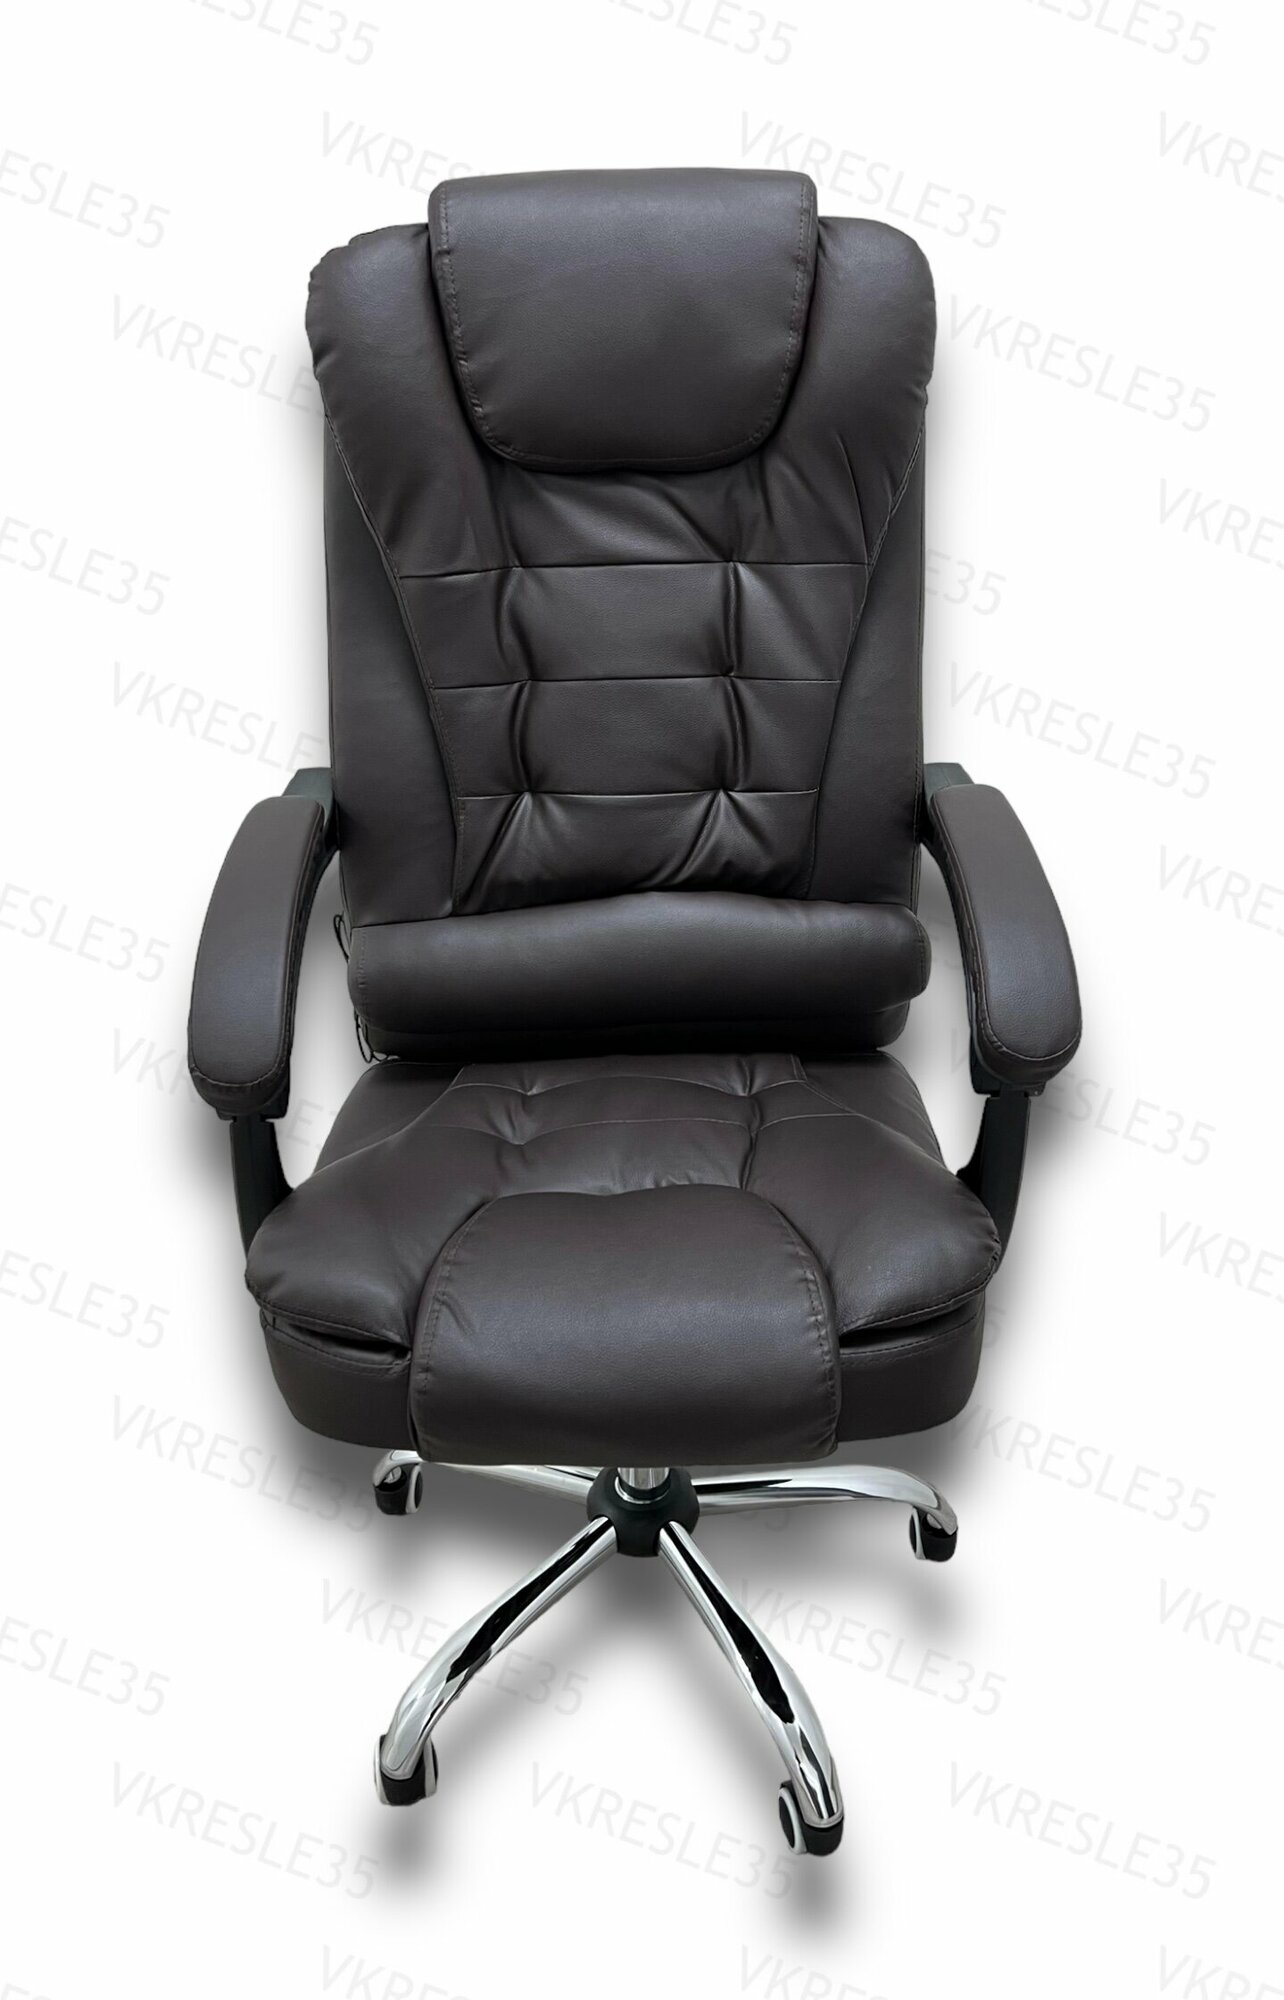 Компьютерное кресло - Кресло Руководителя, функция Вибромассажа , цвет Коричневый